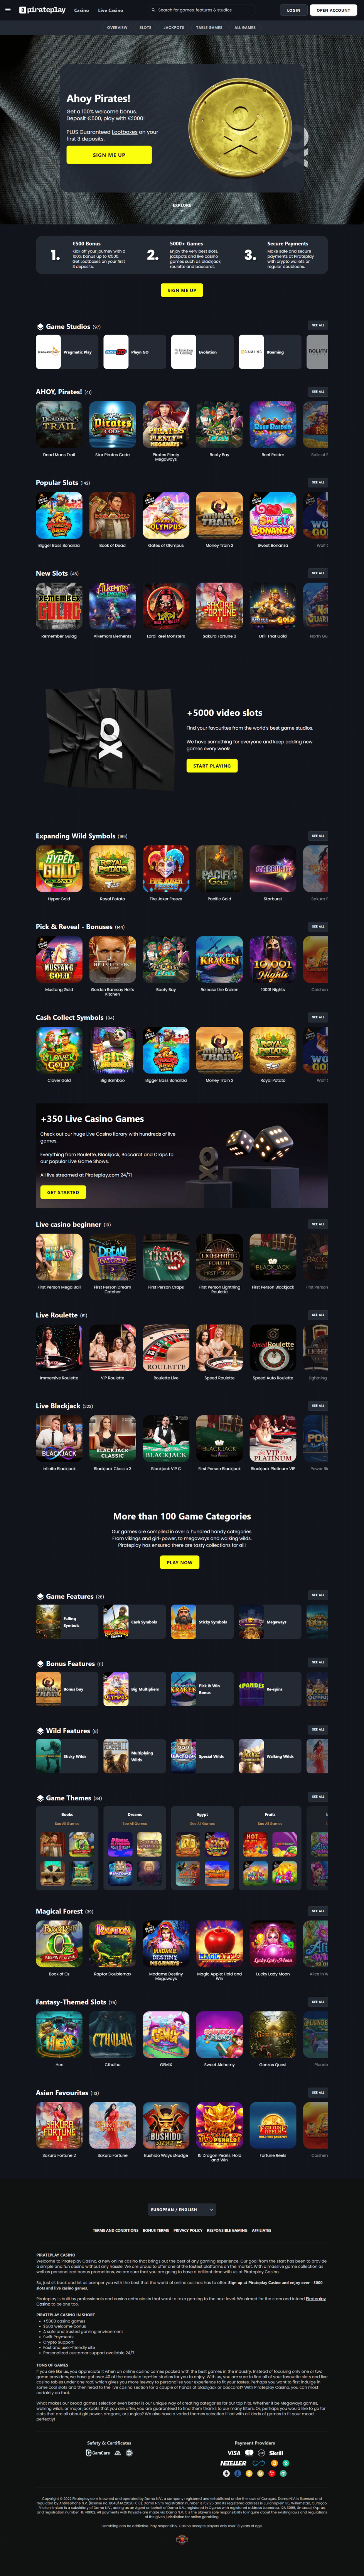 Pirateplay Casino Design